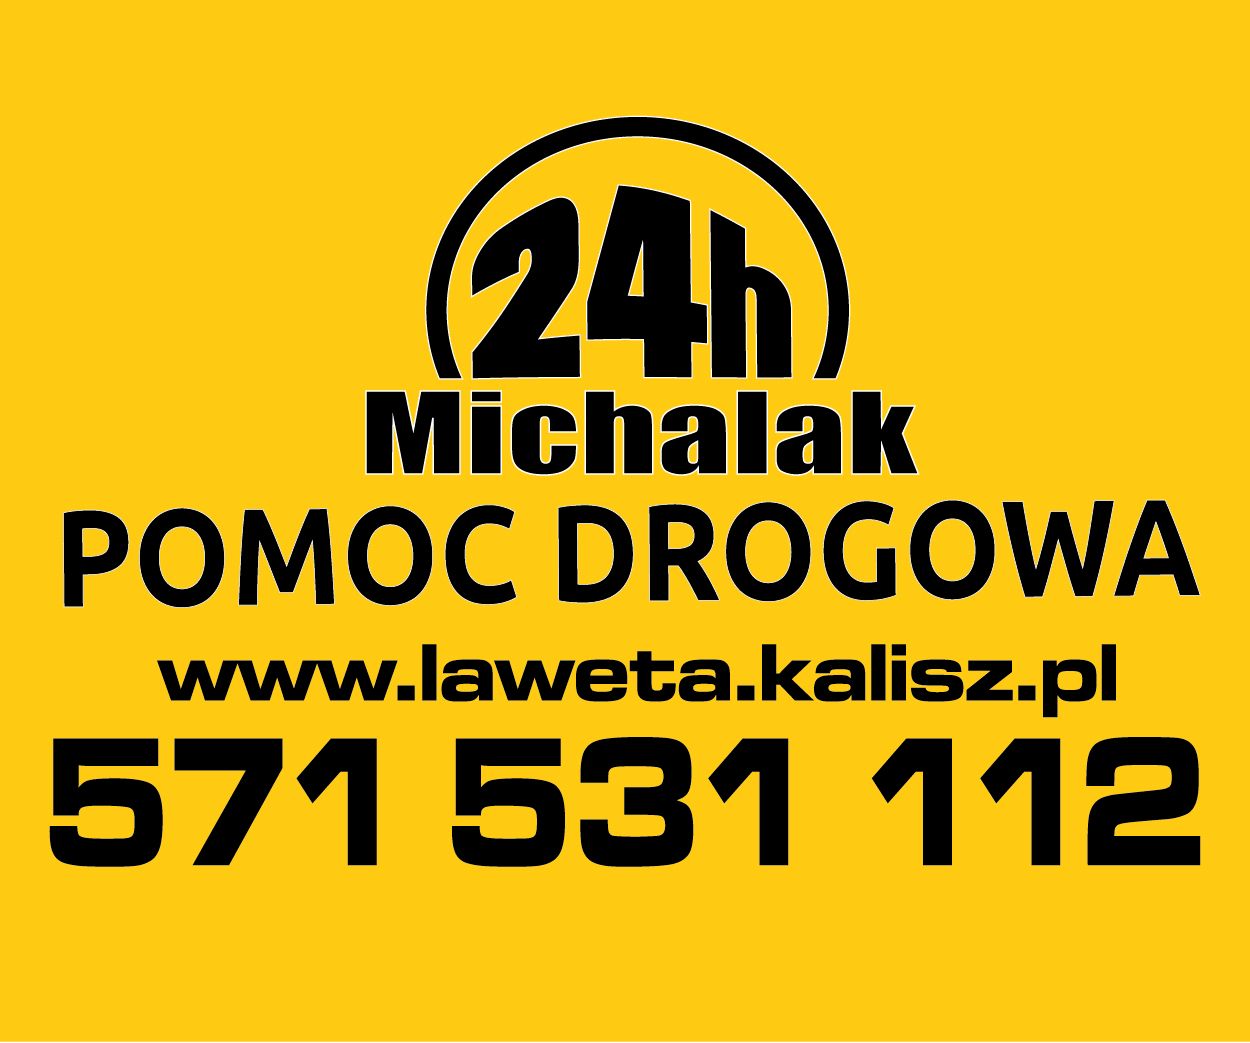 Michalak24 - Pomoc Drogowa Kalisz   tel: 571-731-112 KALISZ - Zdjęcie 1